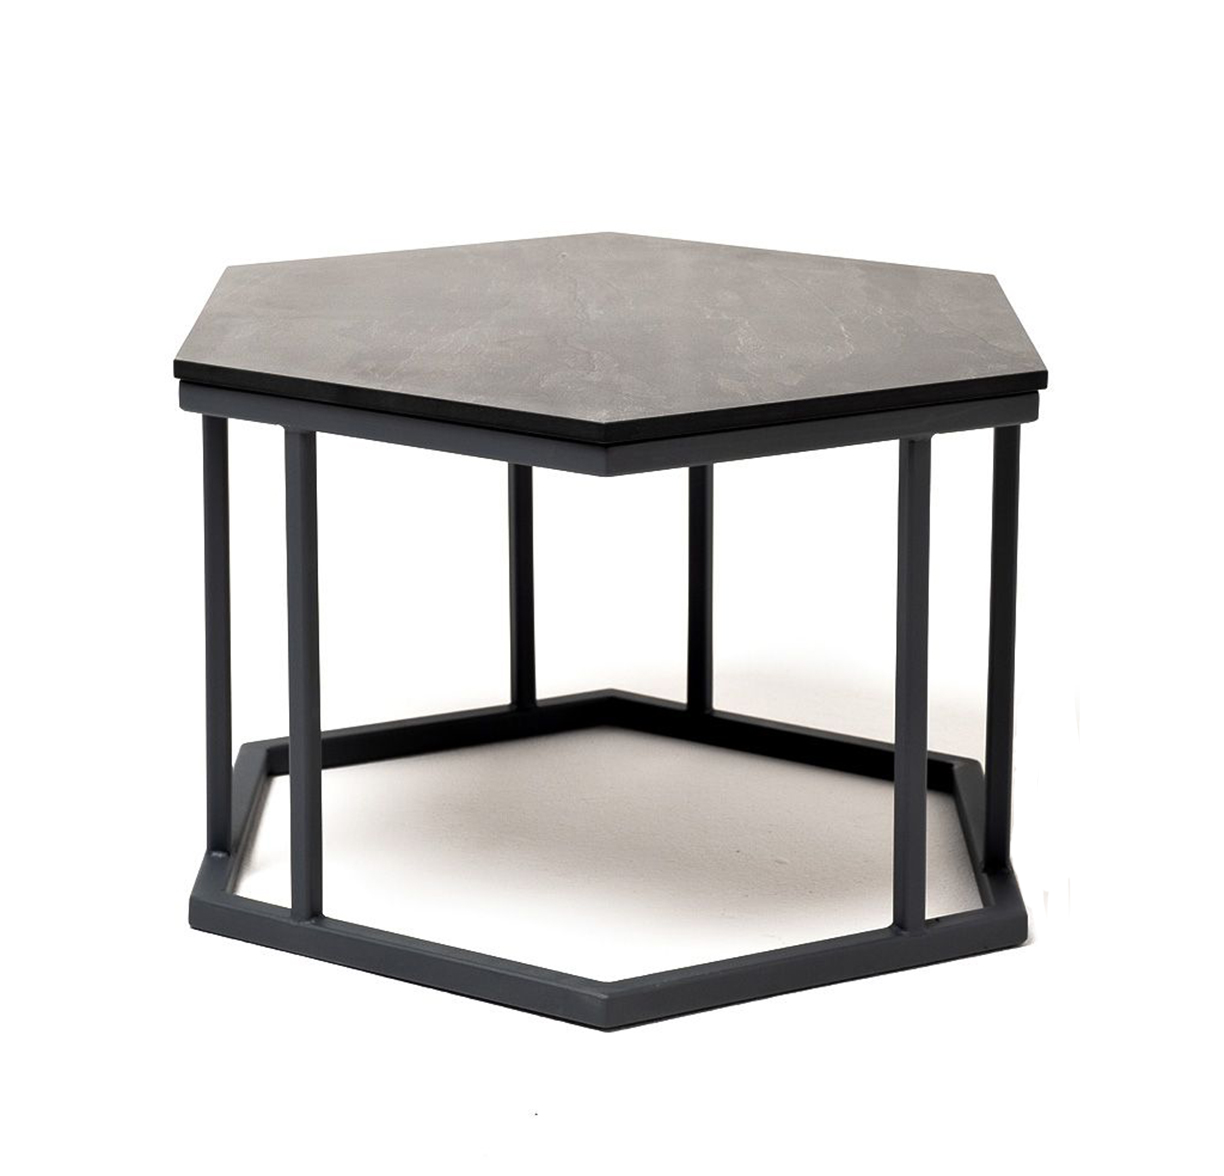 Интерьерный стол из HPL Женева 50 серый гранит интерьерный стол из hpl женева 50 серый гранит